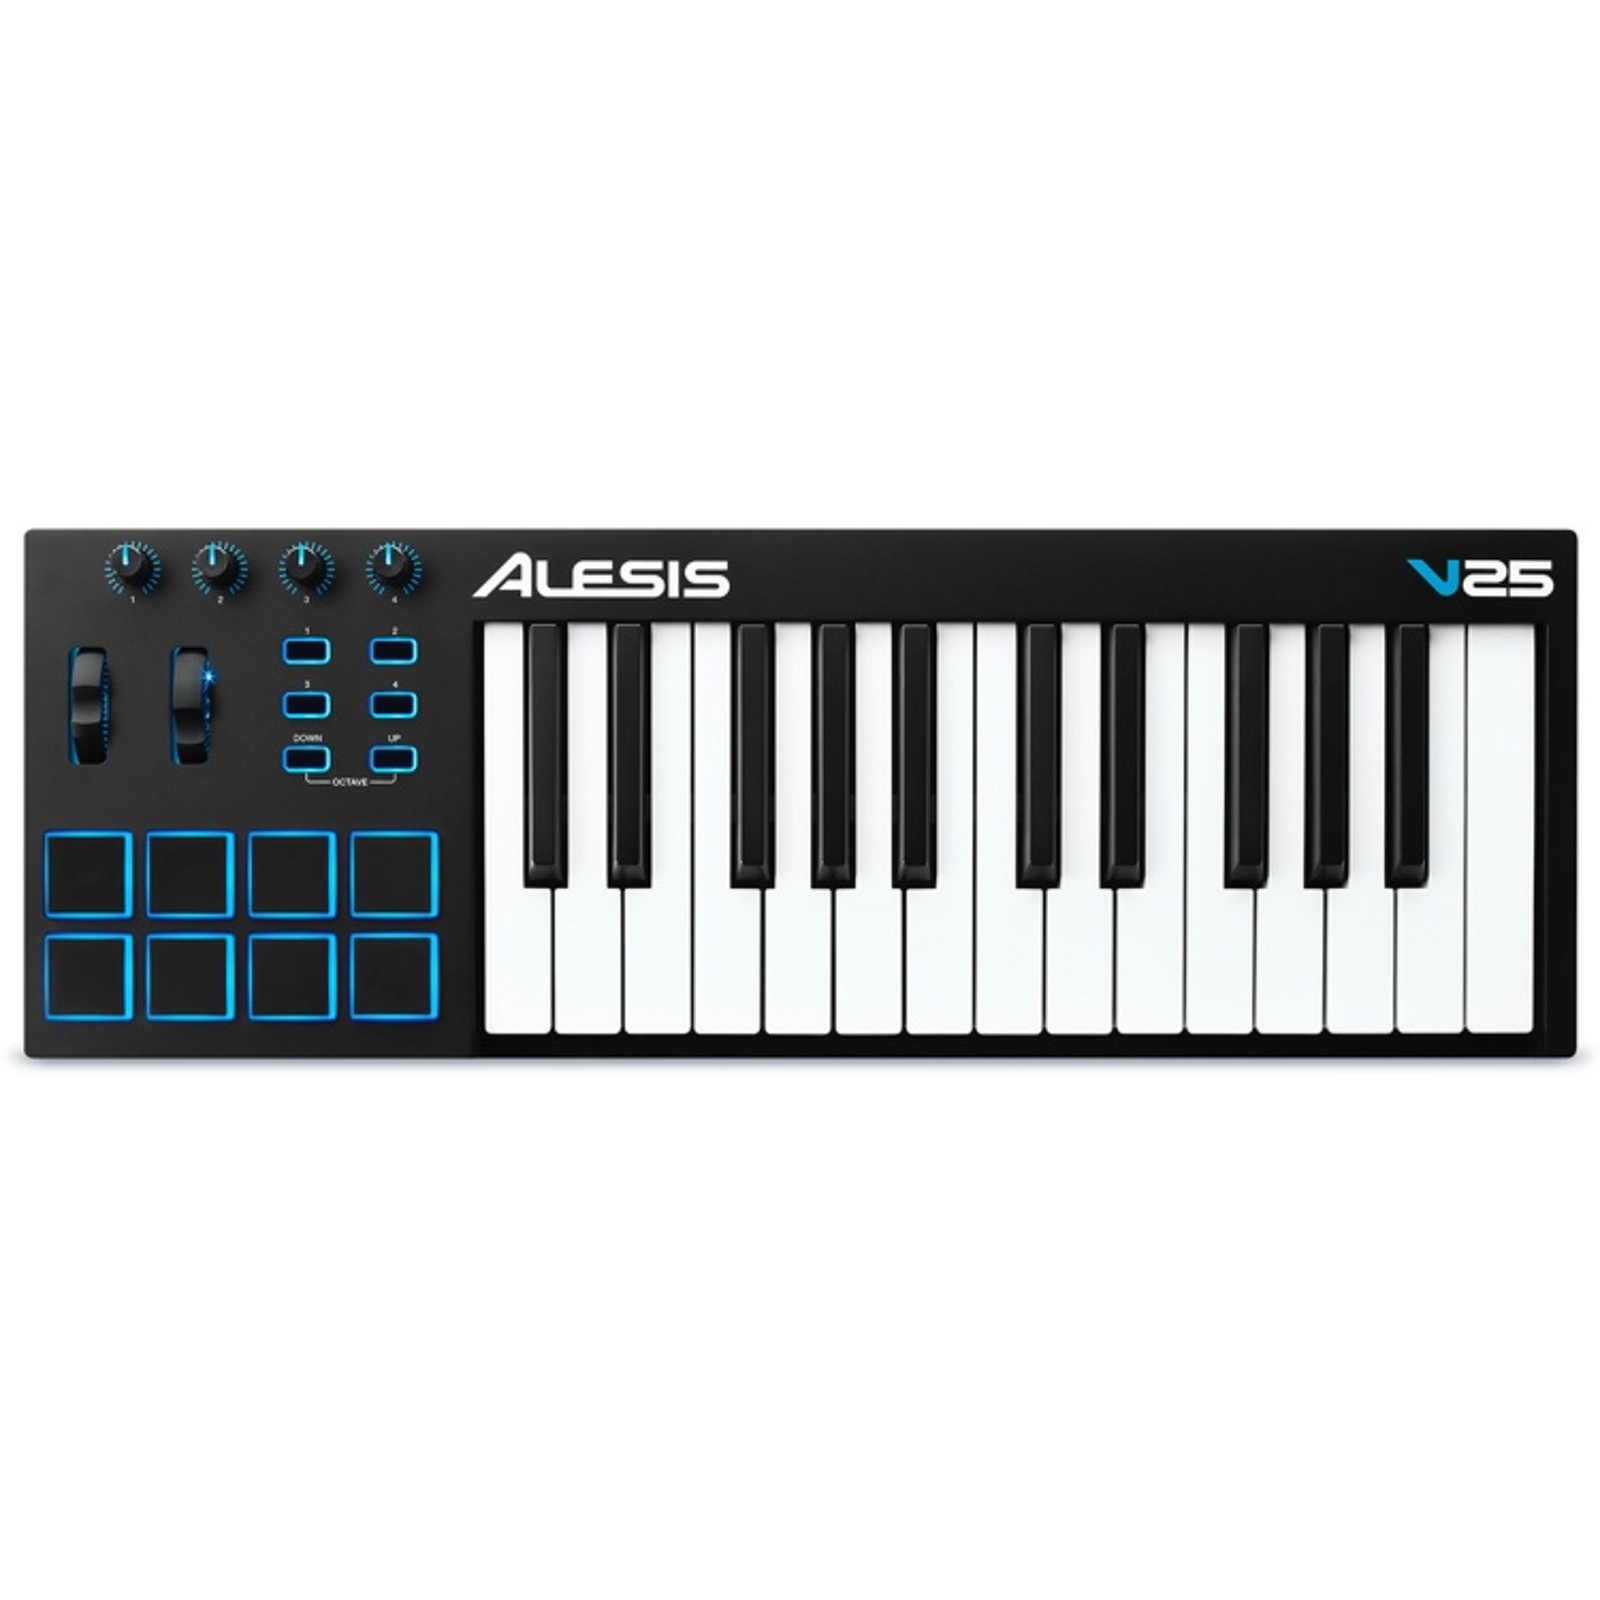 Alesis V25 Keyboard Cont1er